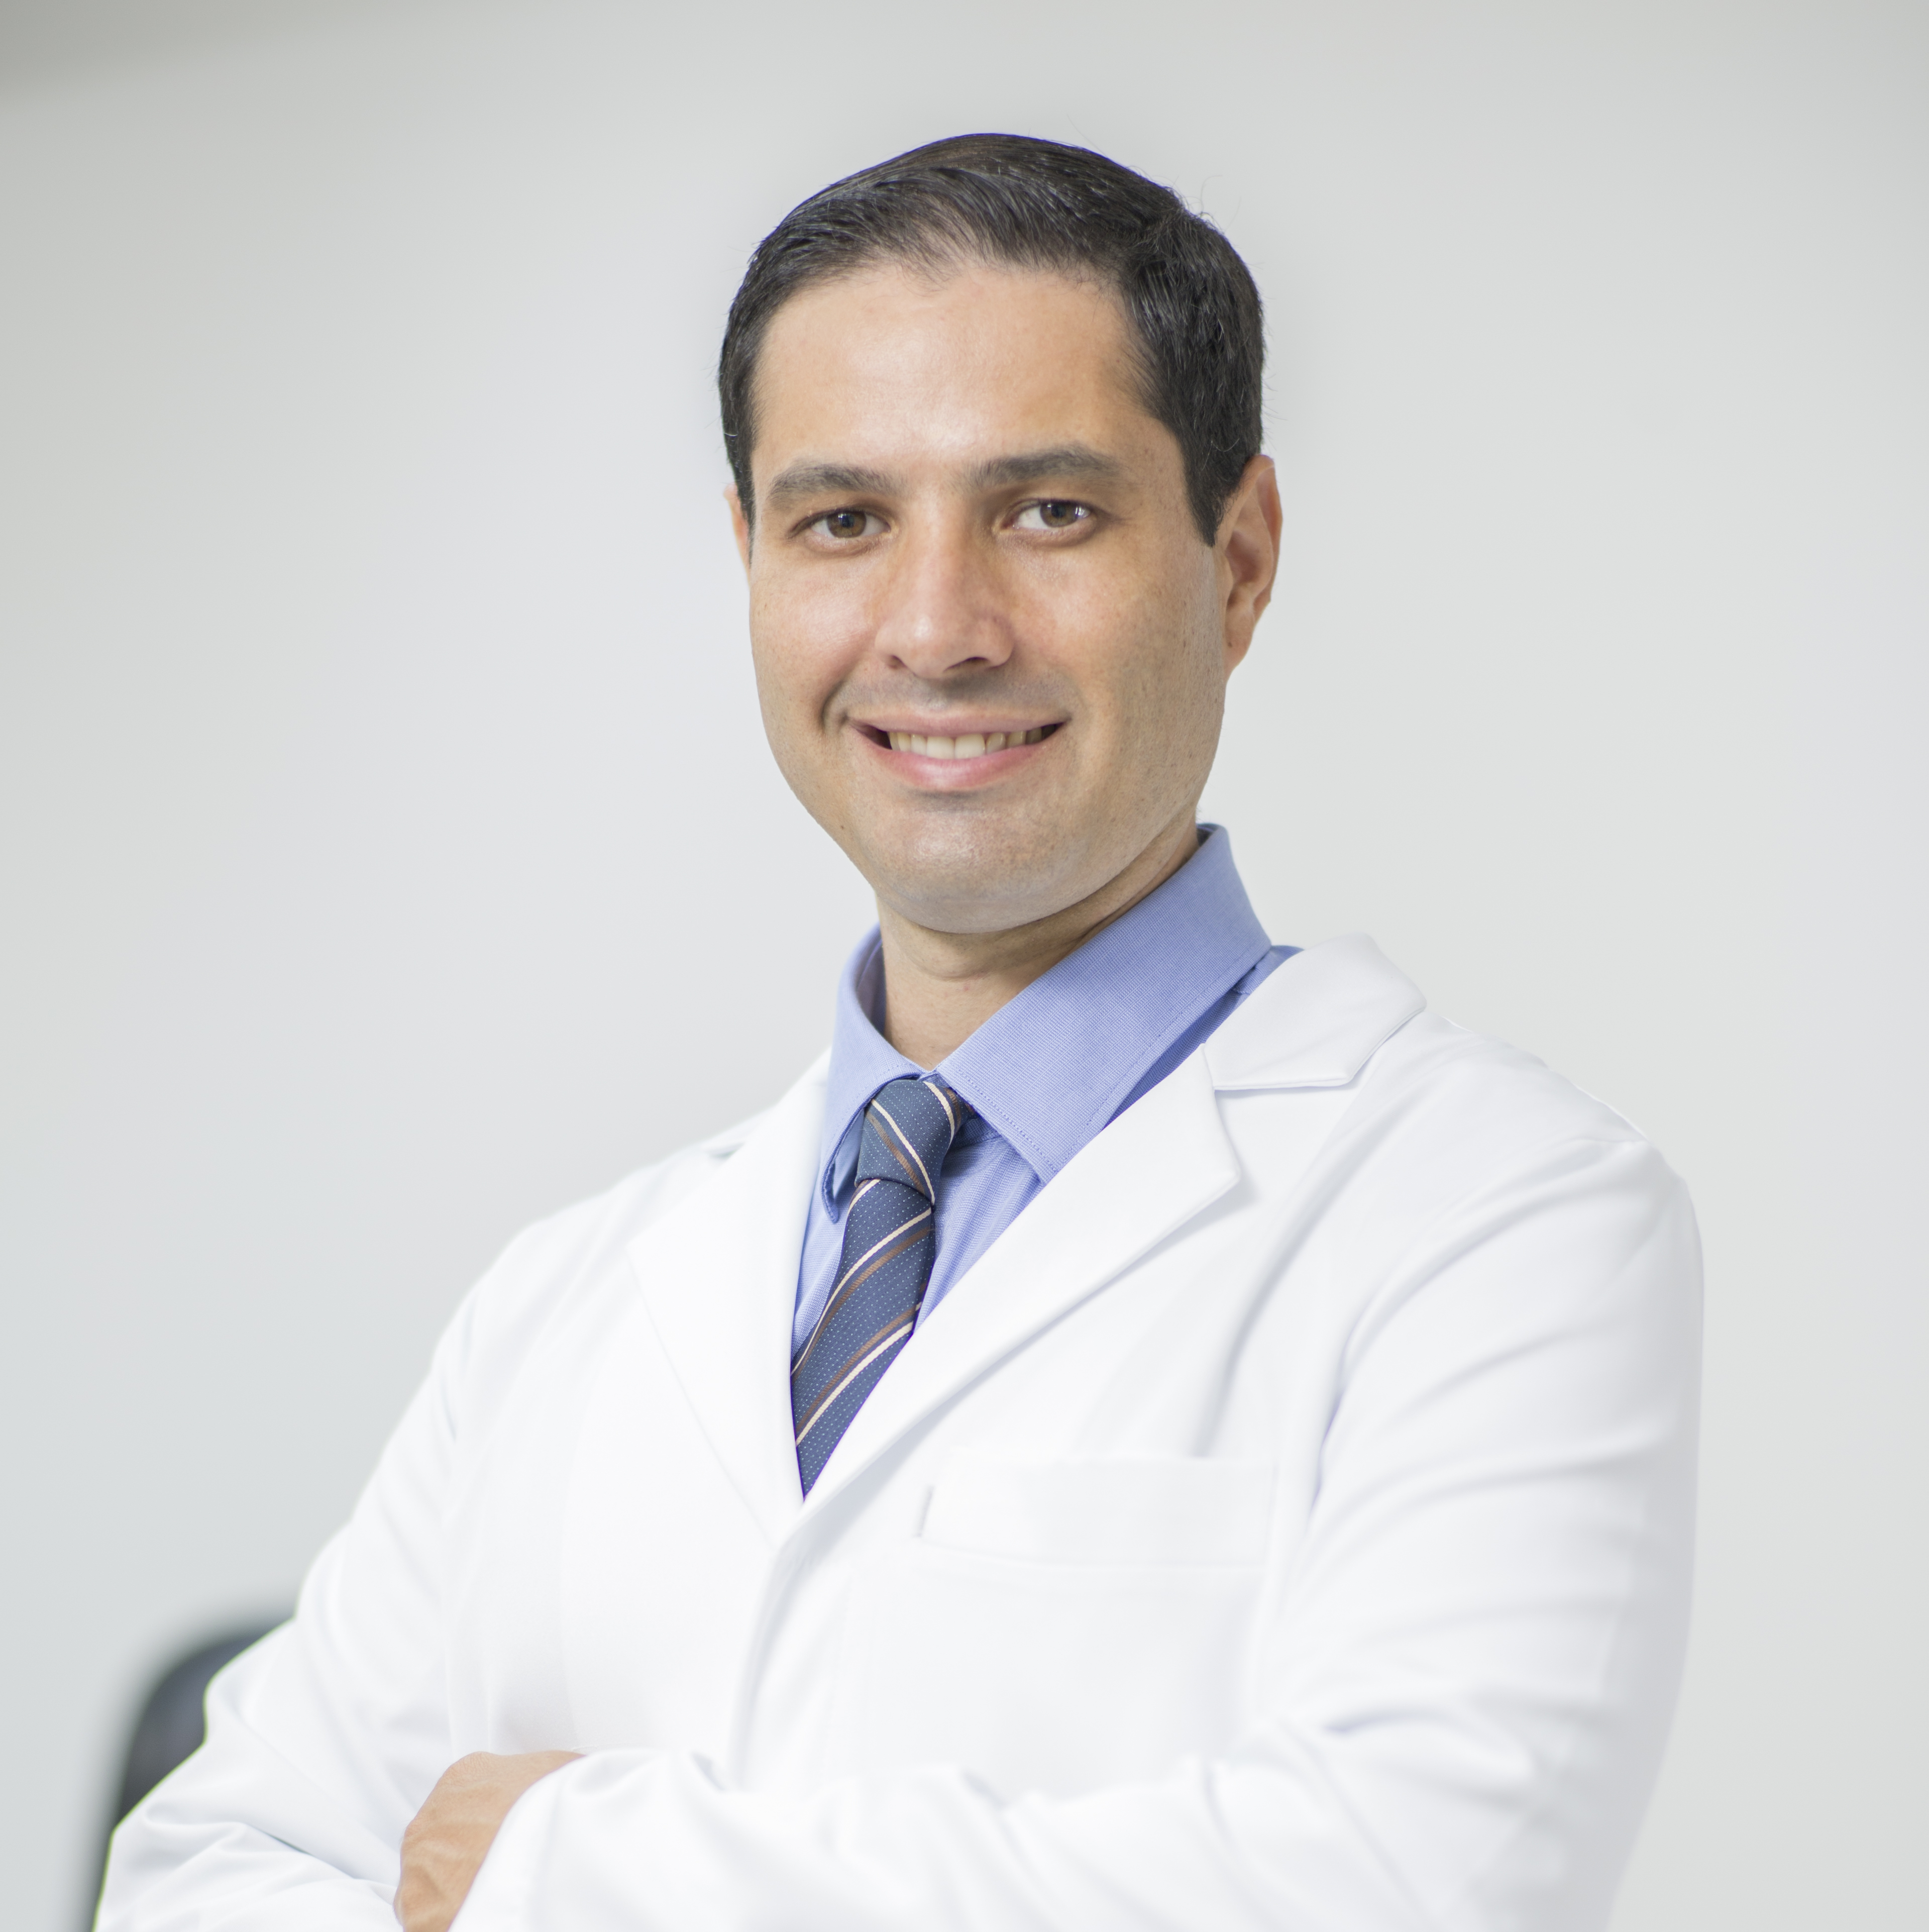 Clinica Pedro Cavalcanti | CatalogoMed